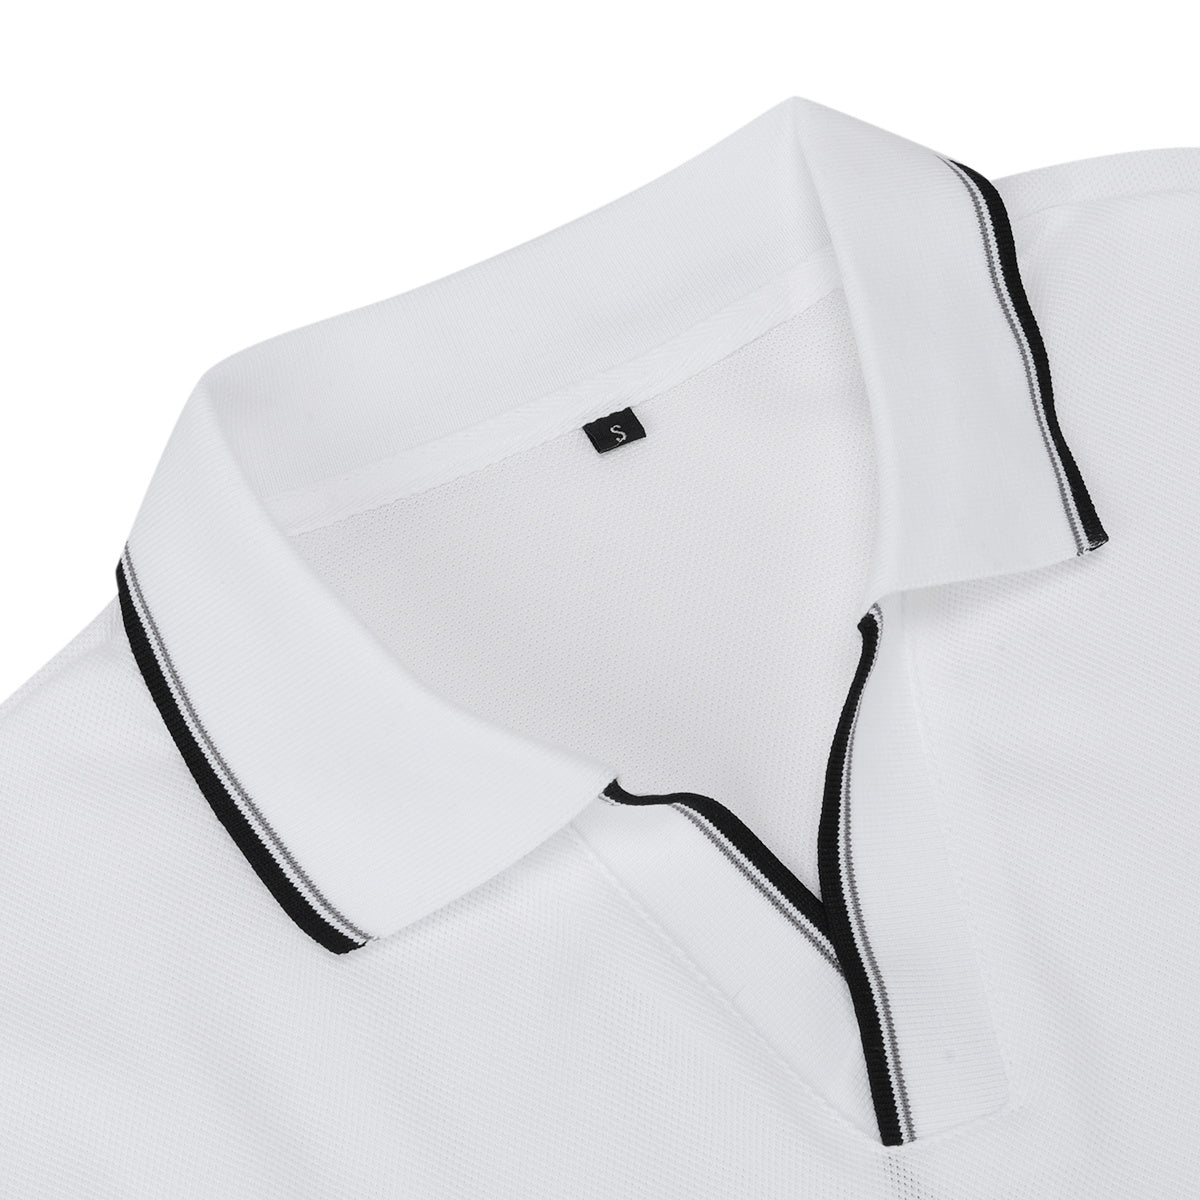 White Series Polos Turn-Down Collar Shirt